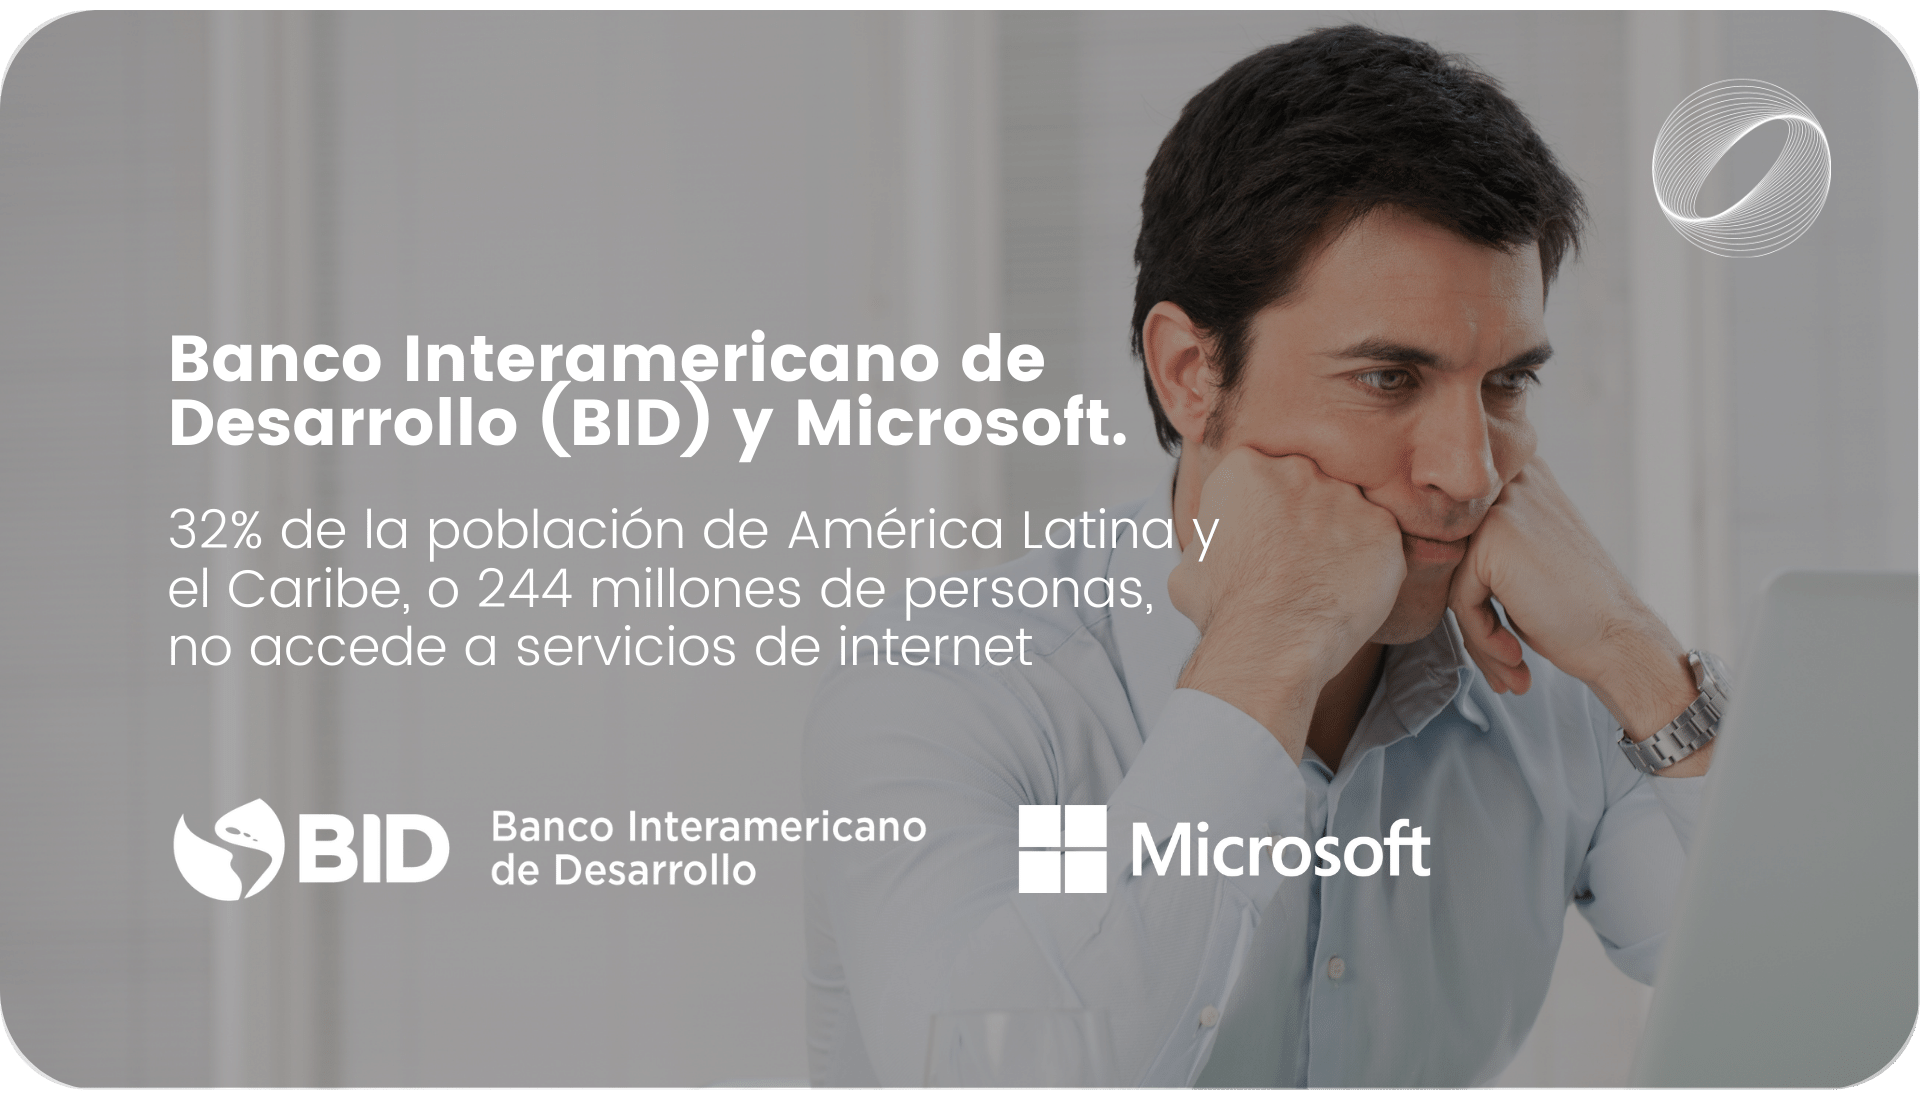 Banco Interamericano de Desarrollo (BID) y Microsoft. Estudio